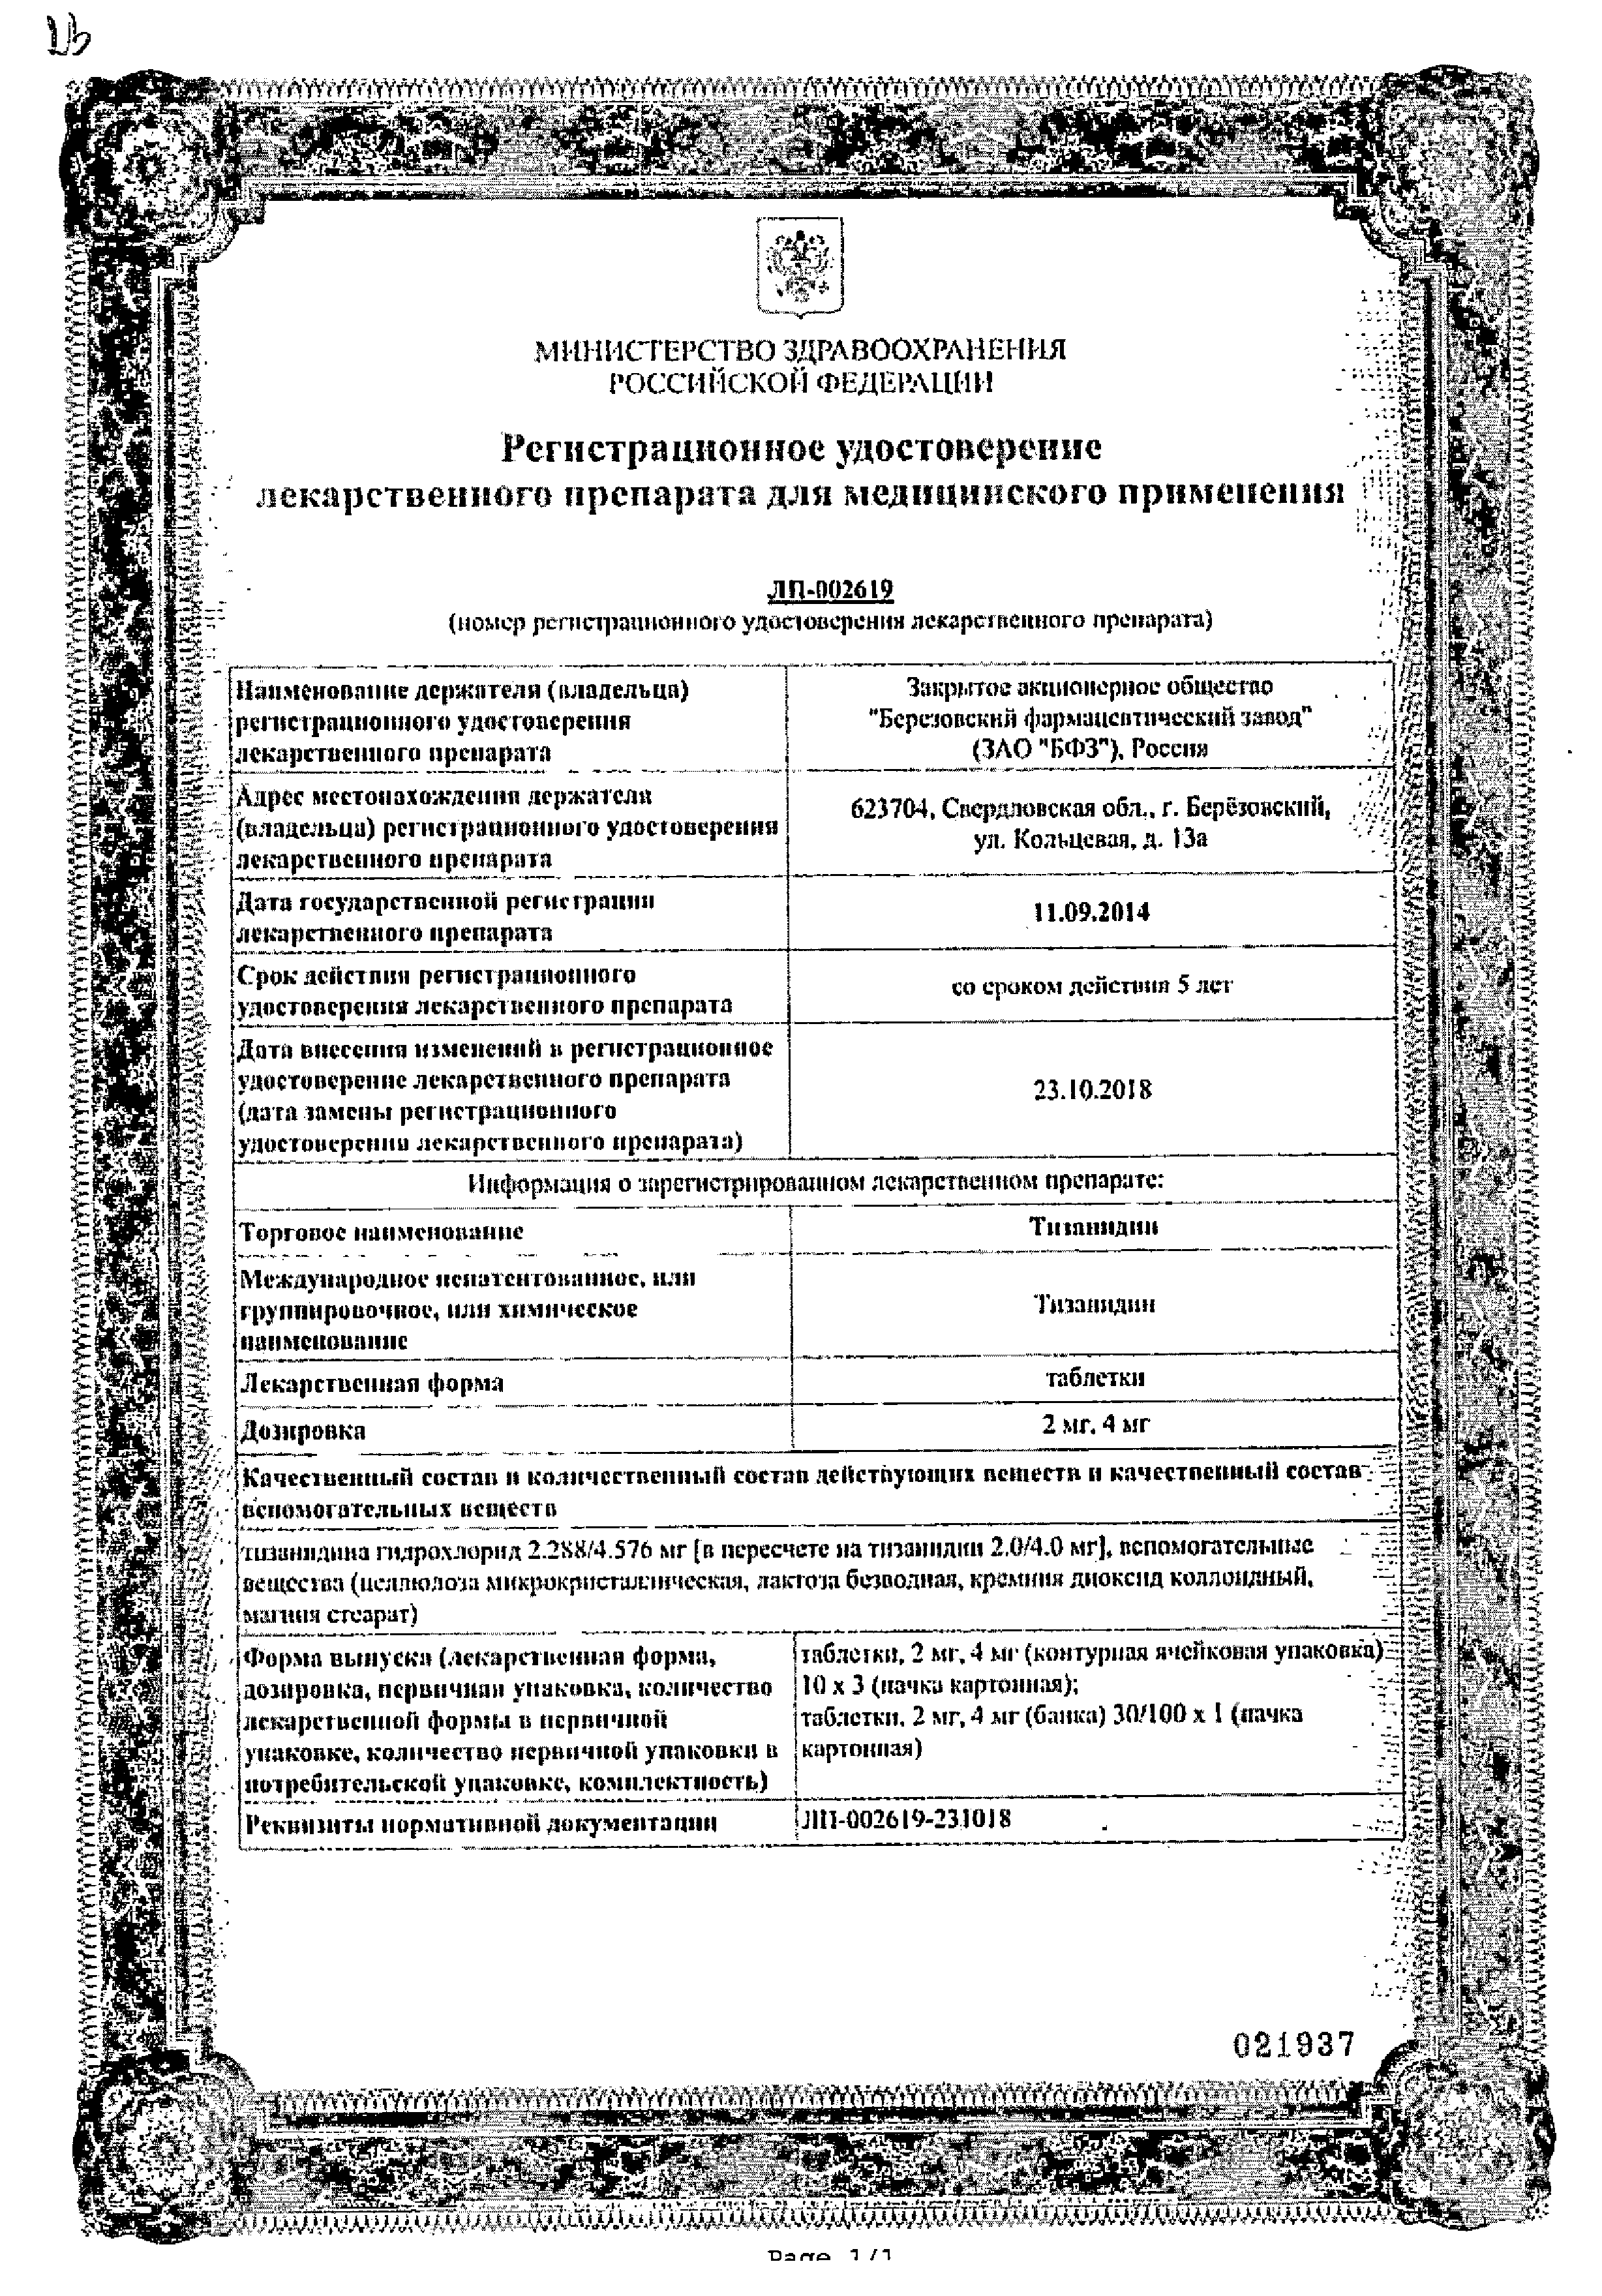 Тизанидин сертификат